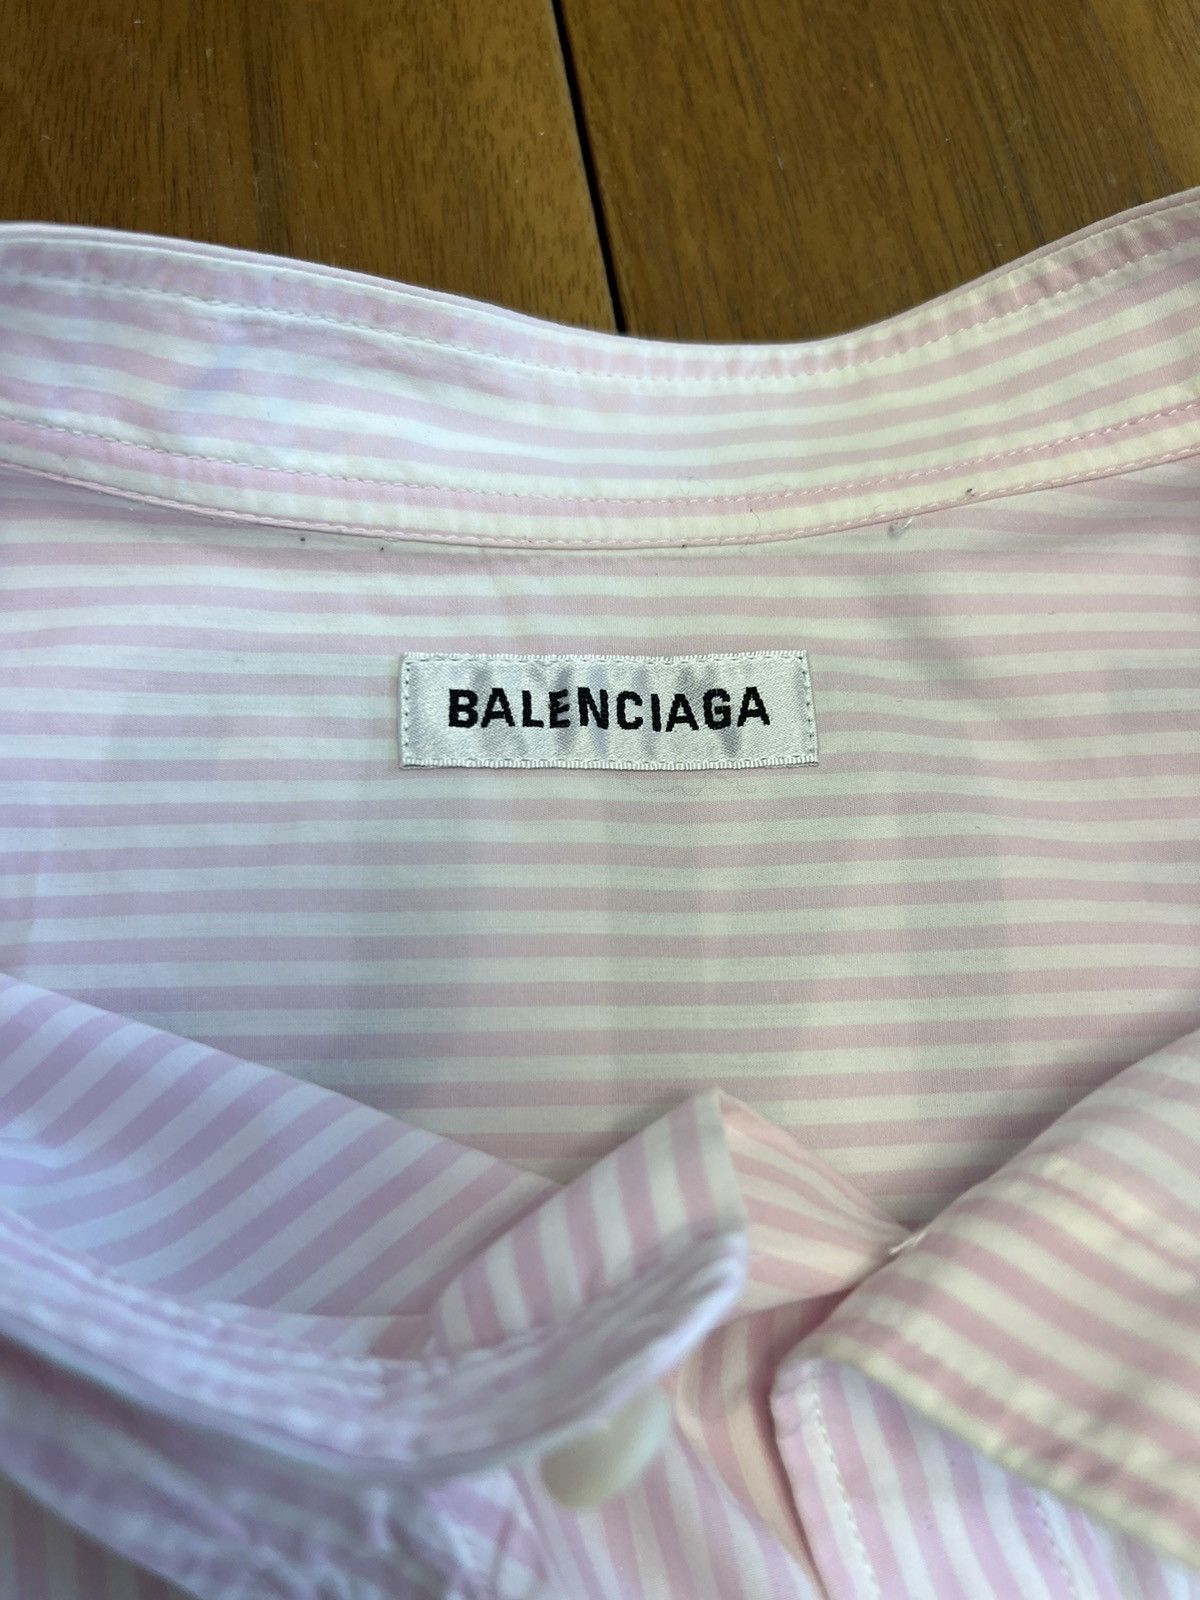 Balenciaga Balenciagia New Swing shirt Size US M / EU 48-50 / 2 - 6 Preview